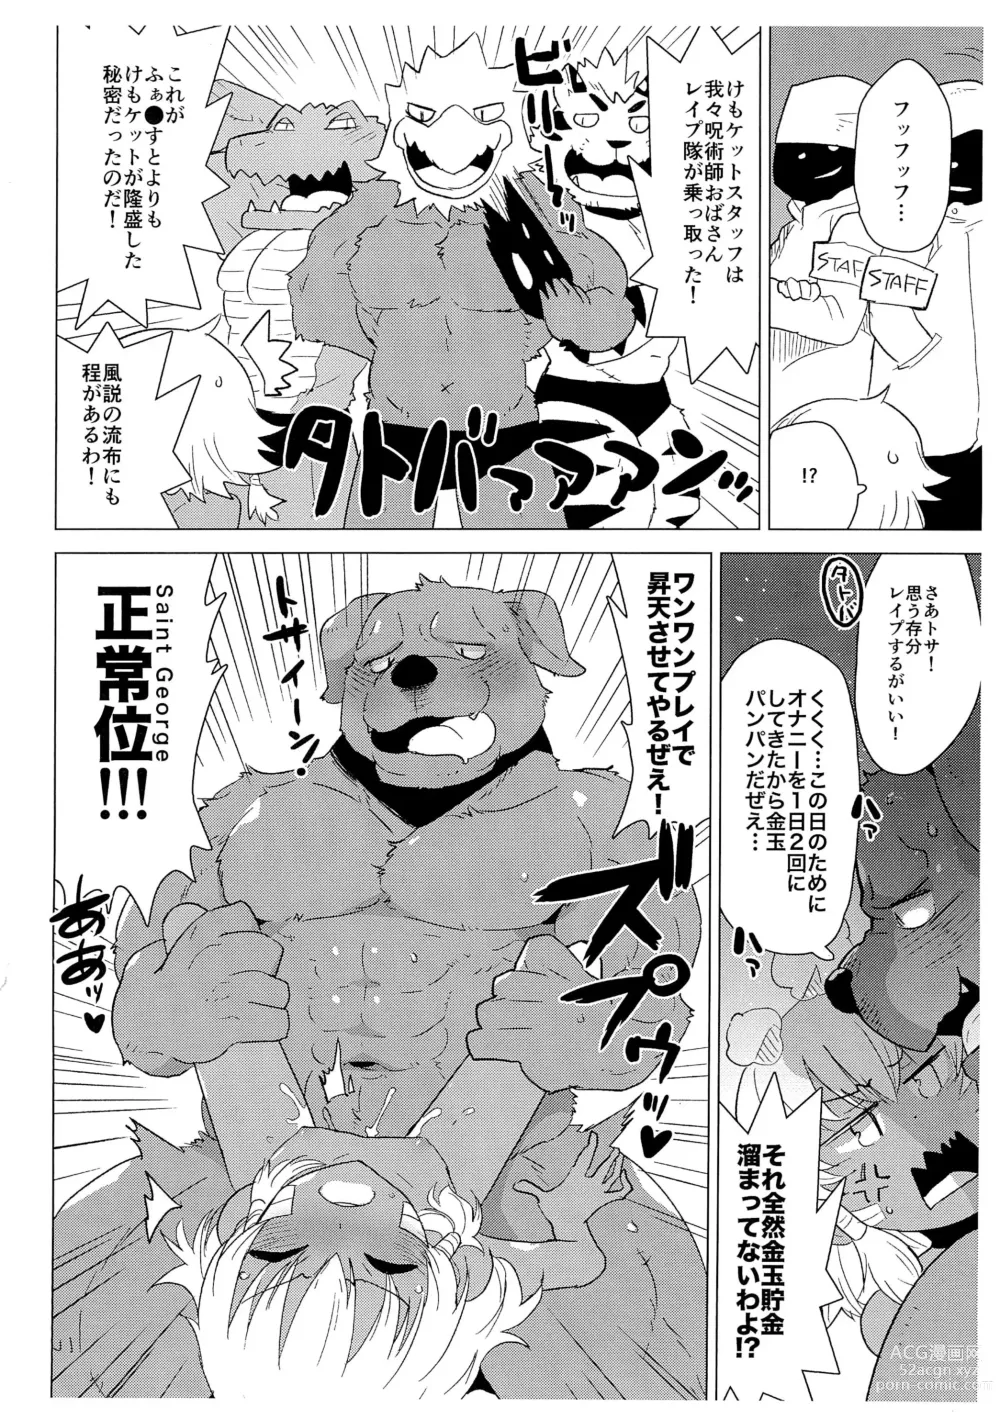 Page 4 of doujinshi Tosa-inu wa Jujutsushi Oba-san no koto ga Suki sugite Kawaguchi Eki Shimin Hall Friendia de Rape shichau Hon